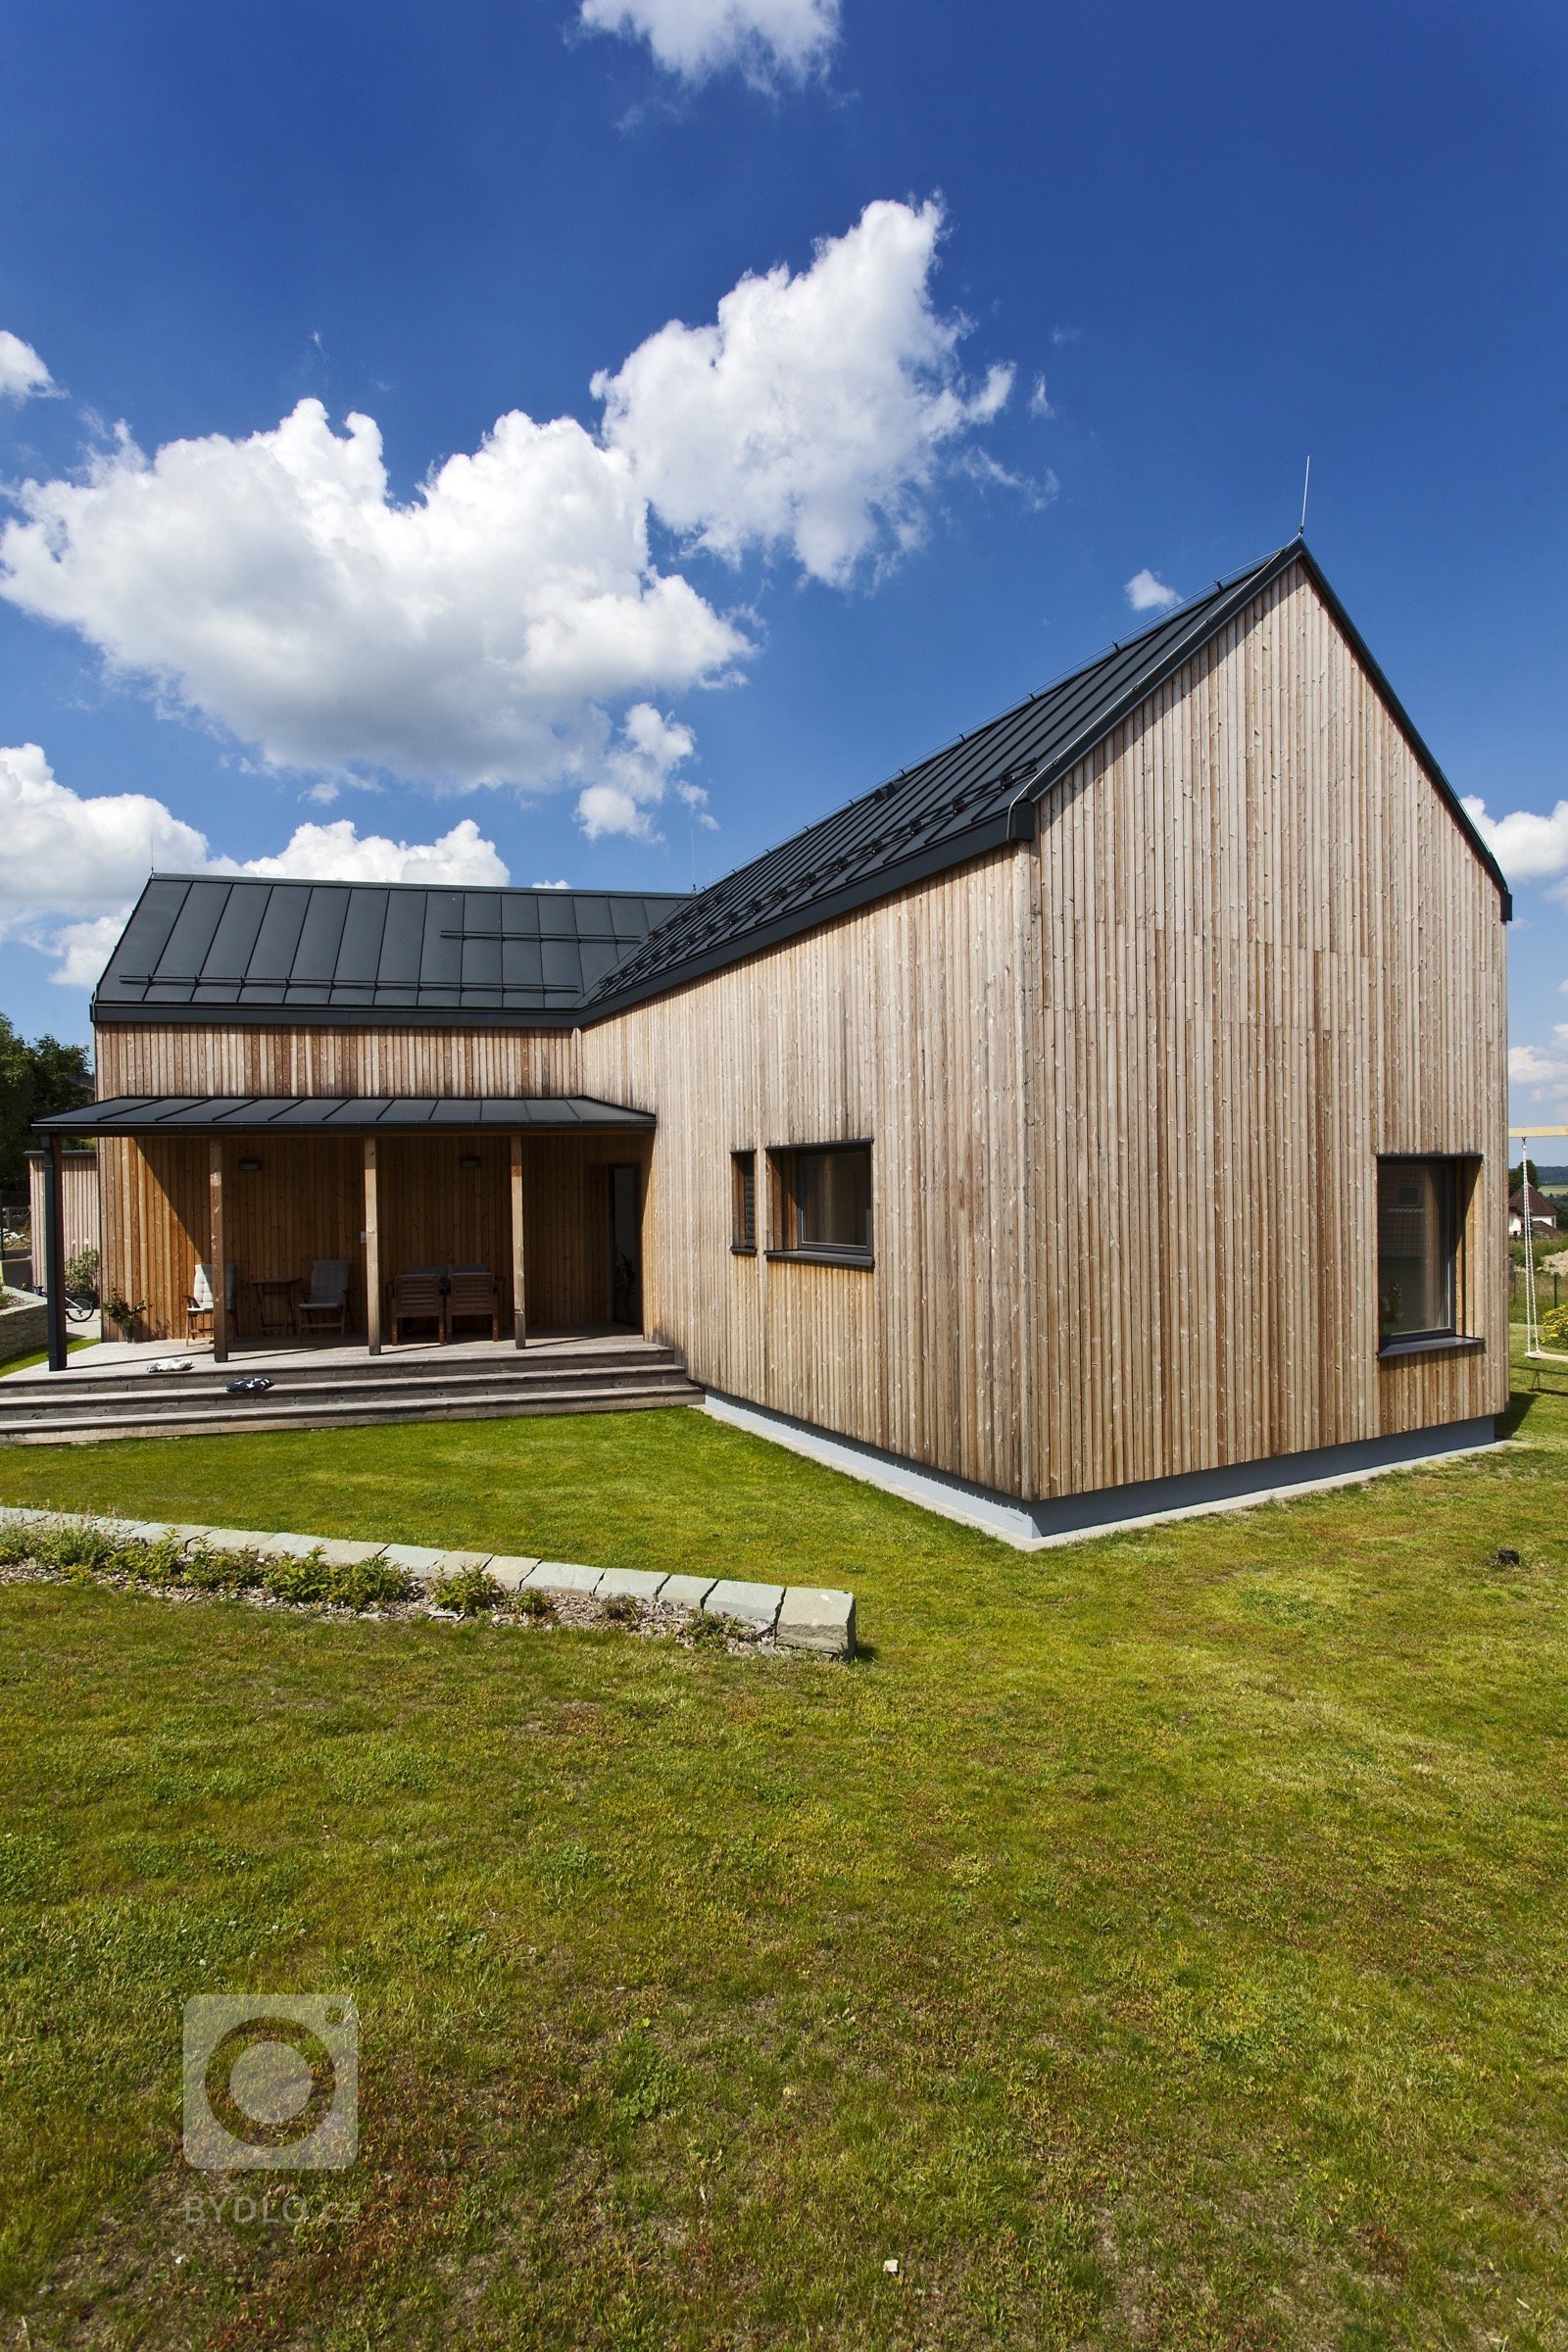 Rodinný dům v malé obci Pstruží na Moravě se svým půdorysným řešením vymyká běžným stavením vesnického typu se sedlovou střechou. Jeho uzpůsobení totiž vyplývá…